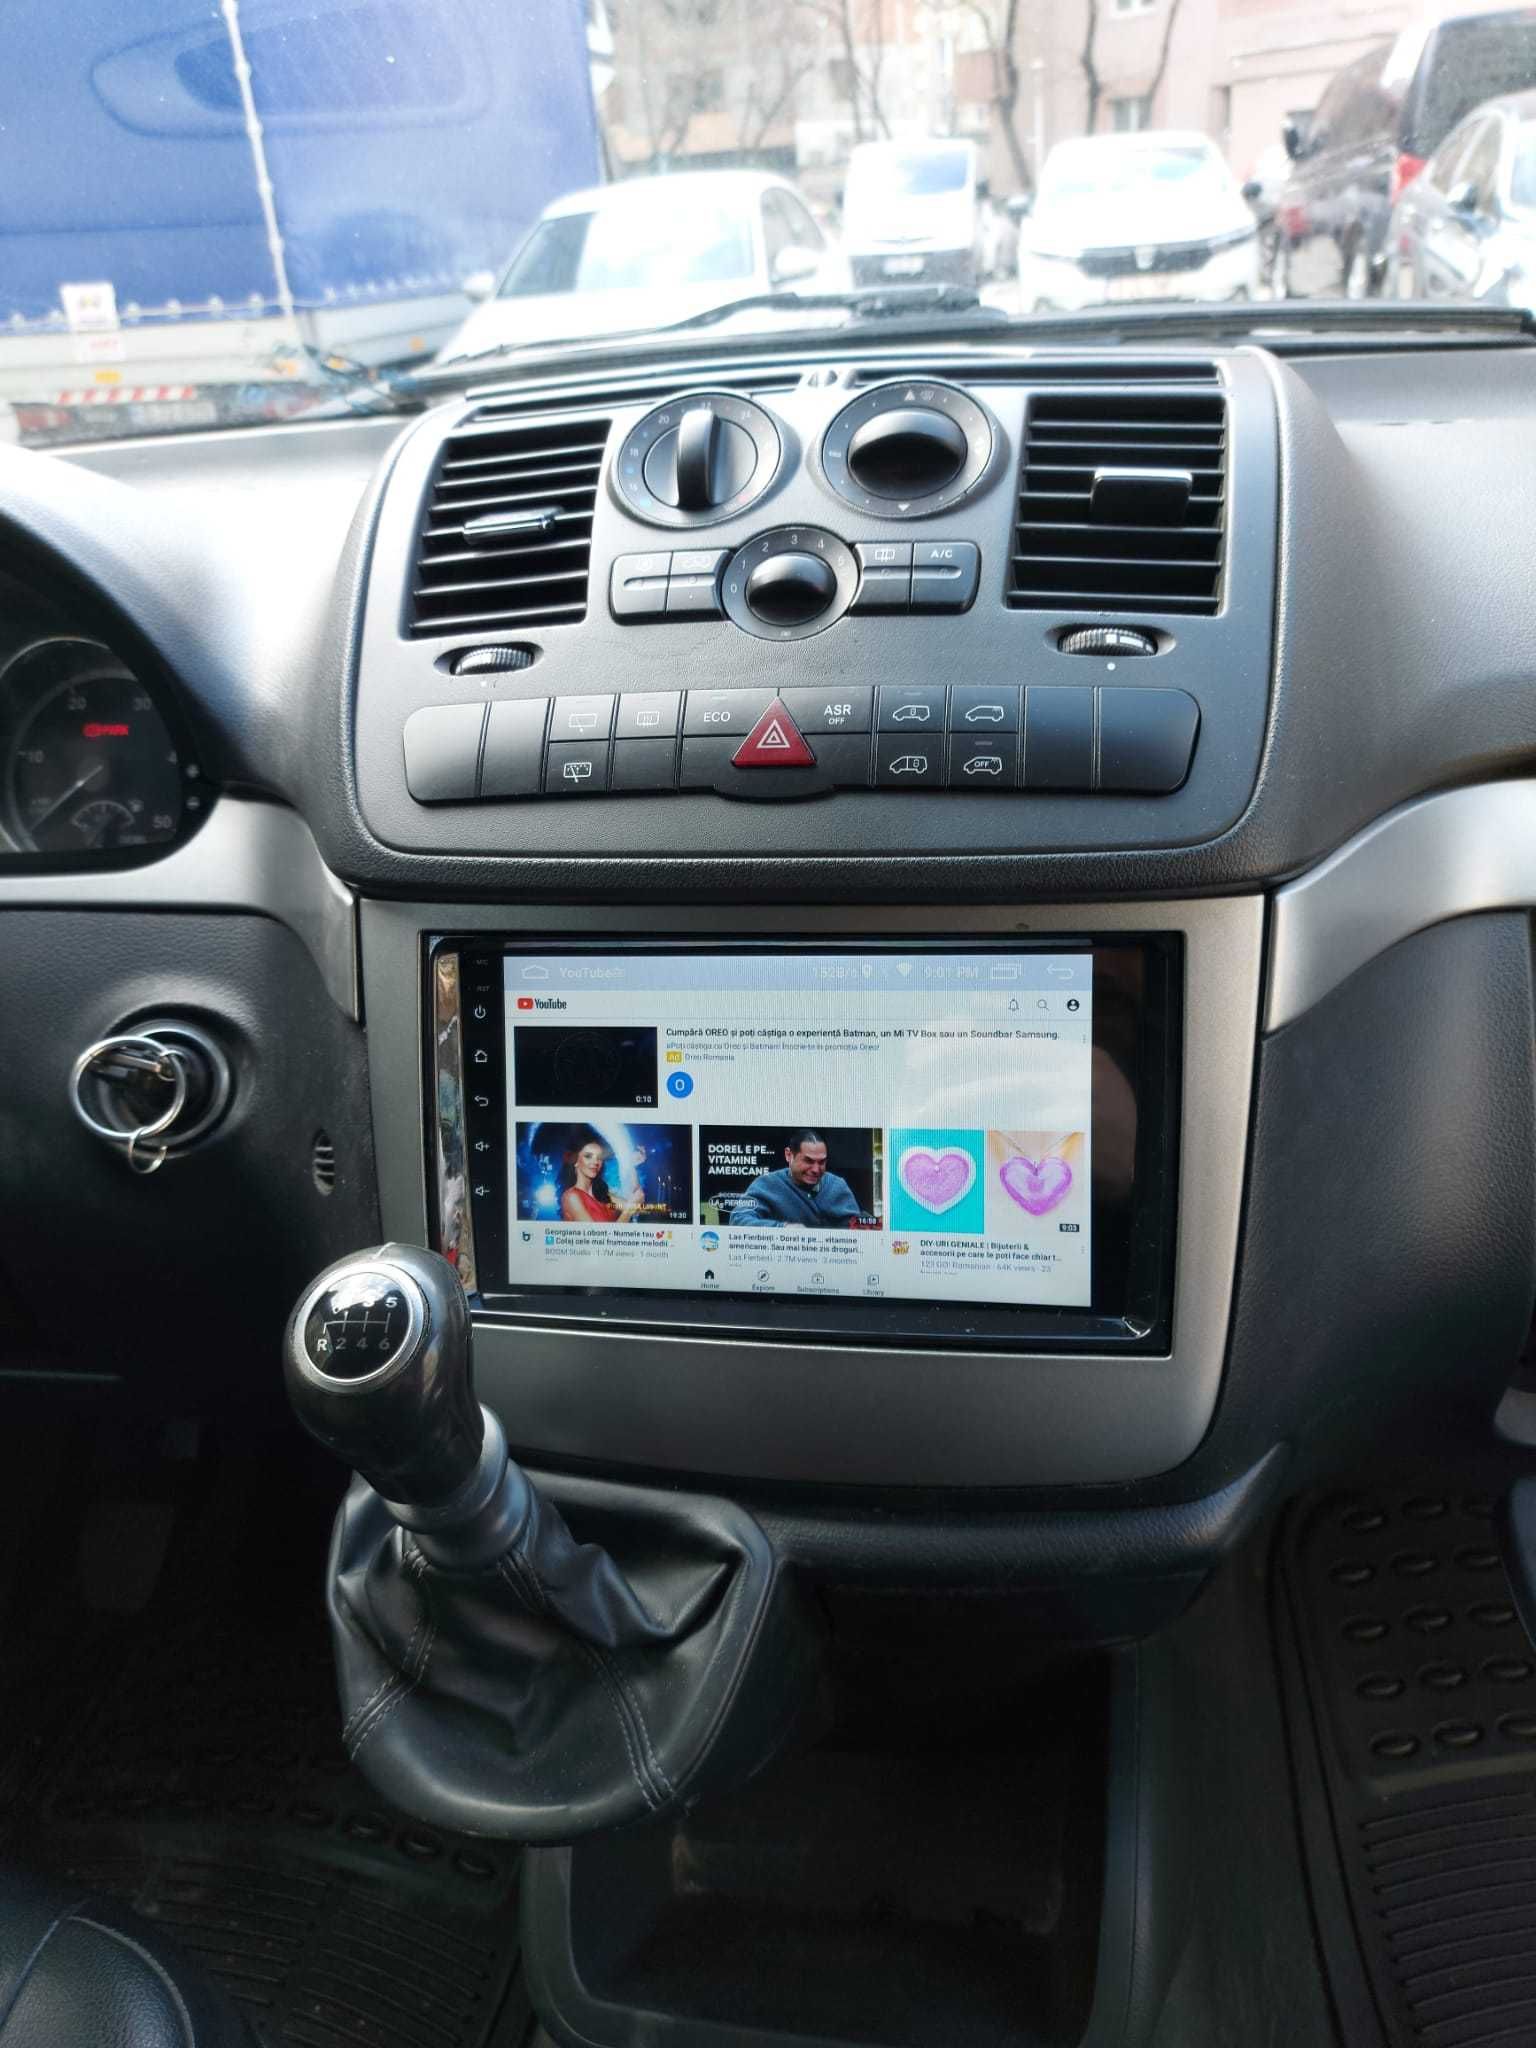 Navigatie Android Mercedes Aclass Bclass Waze YouTube GPS BT